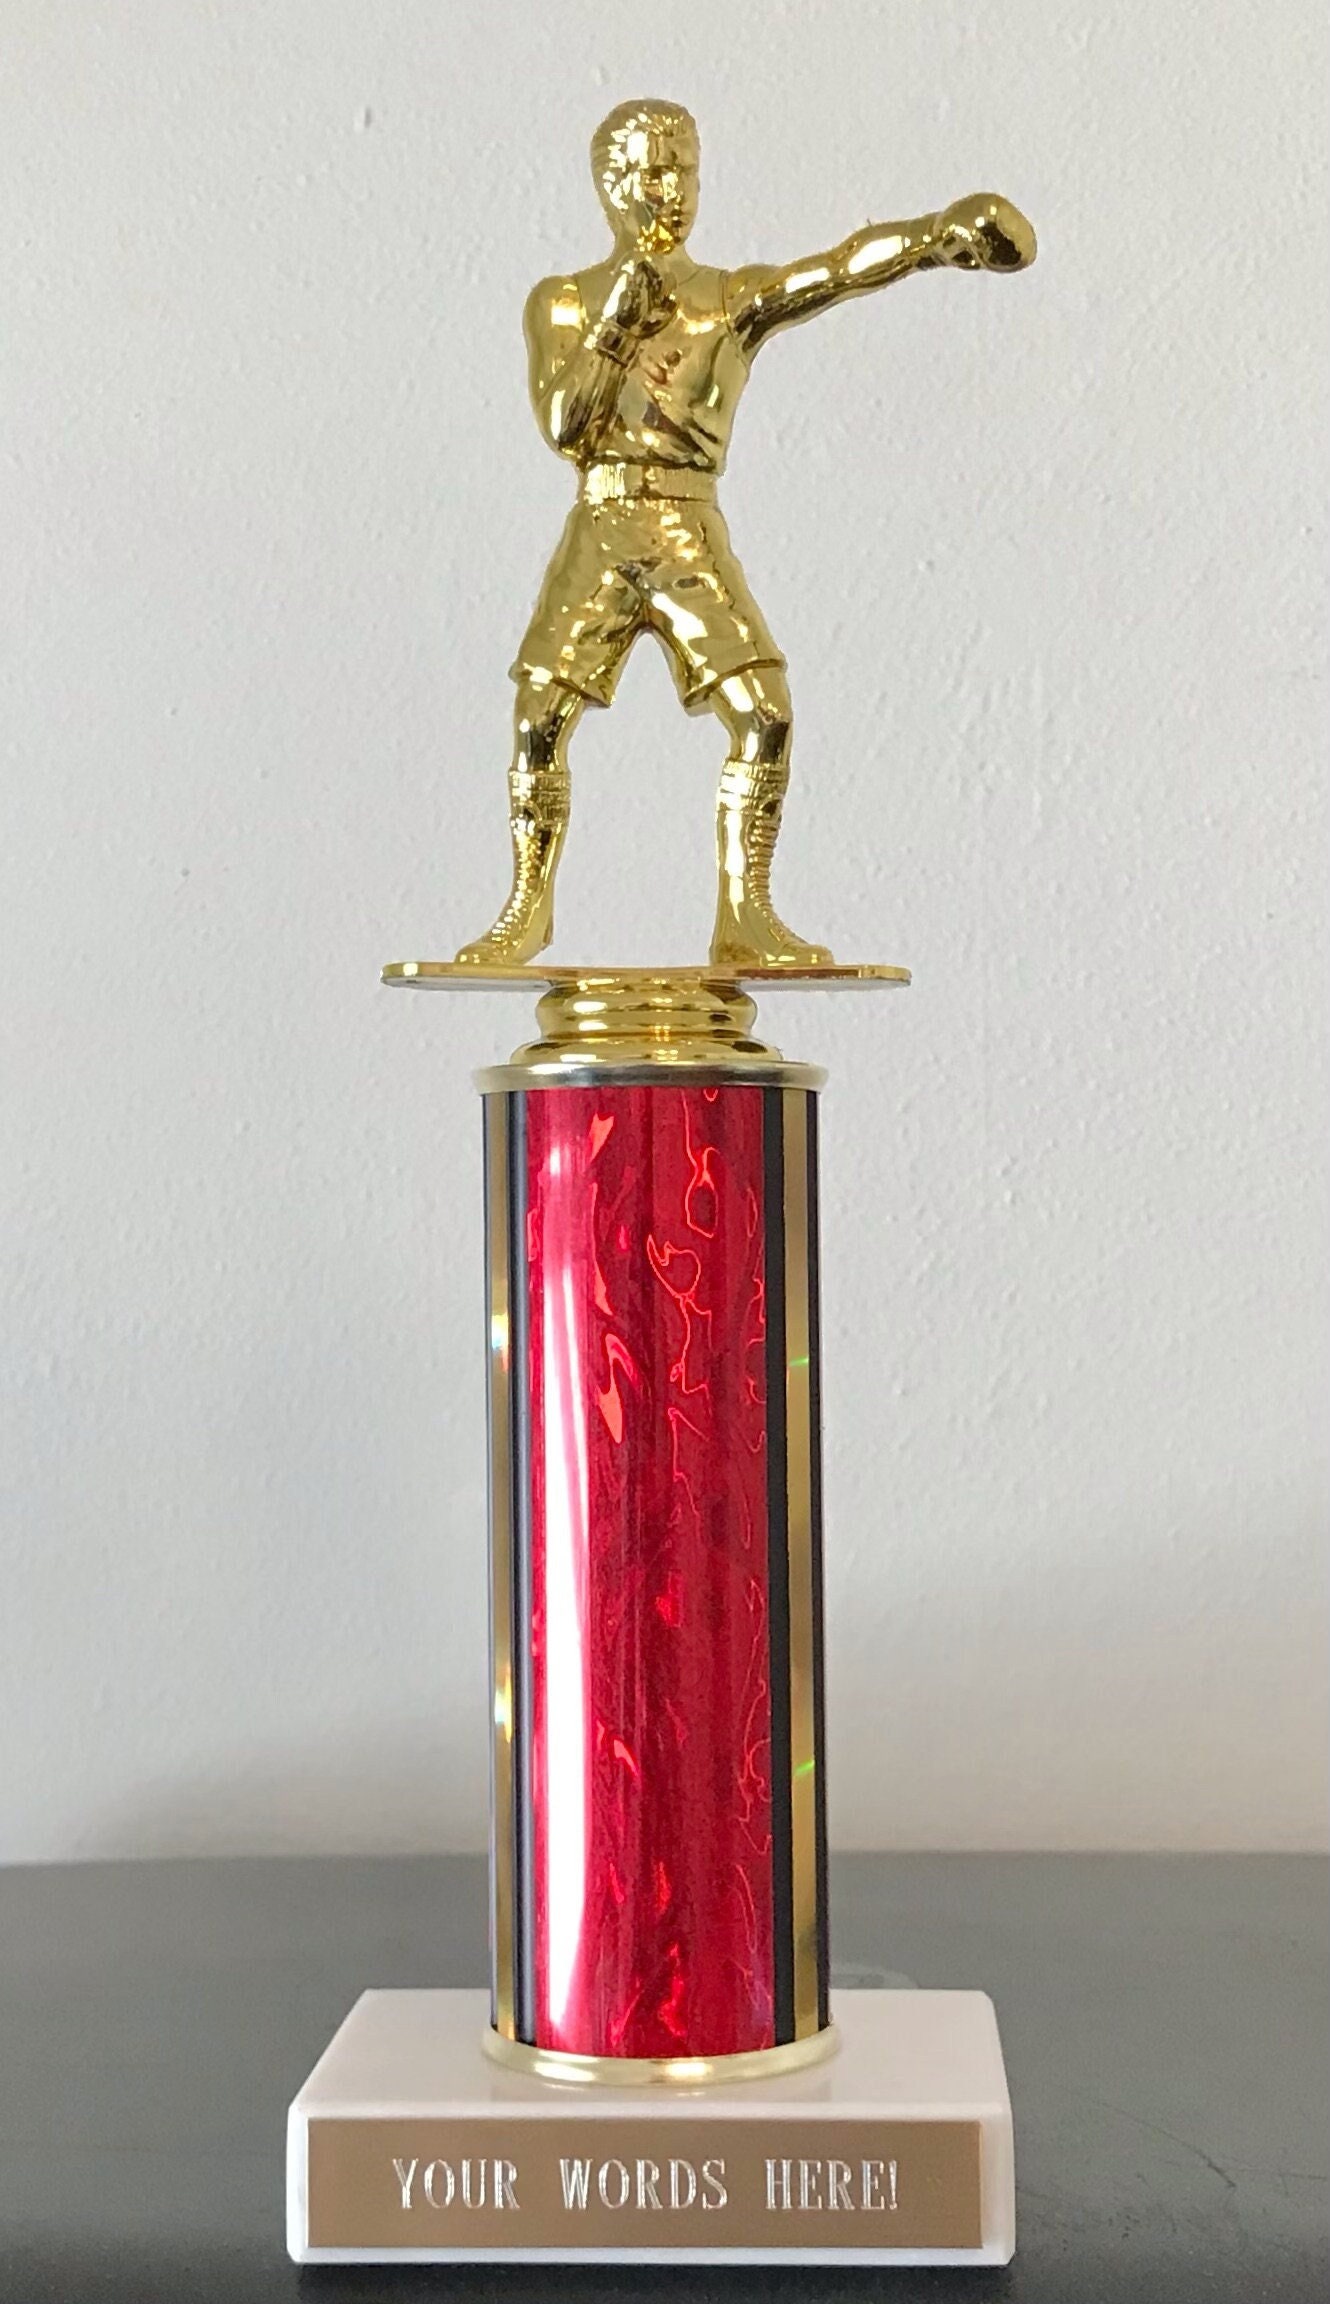 耐熱 二層 足あとぐらす (M) Boxing Trophy, 14"Silver Cup Boxing Award Trophies with  Free Personalization, 10枚組